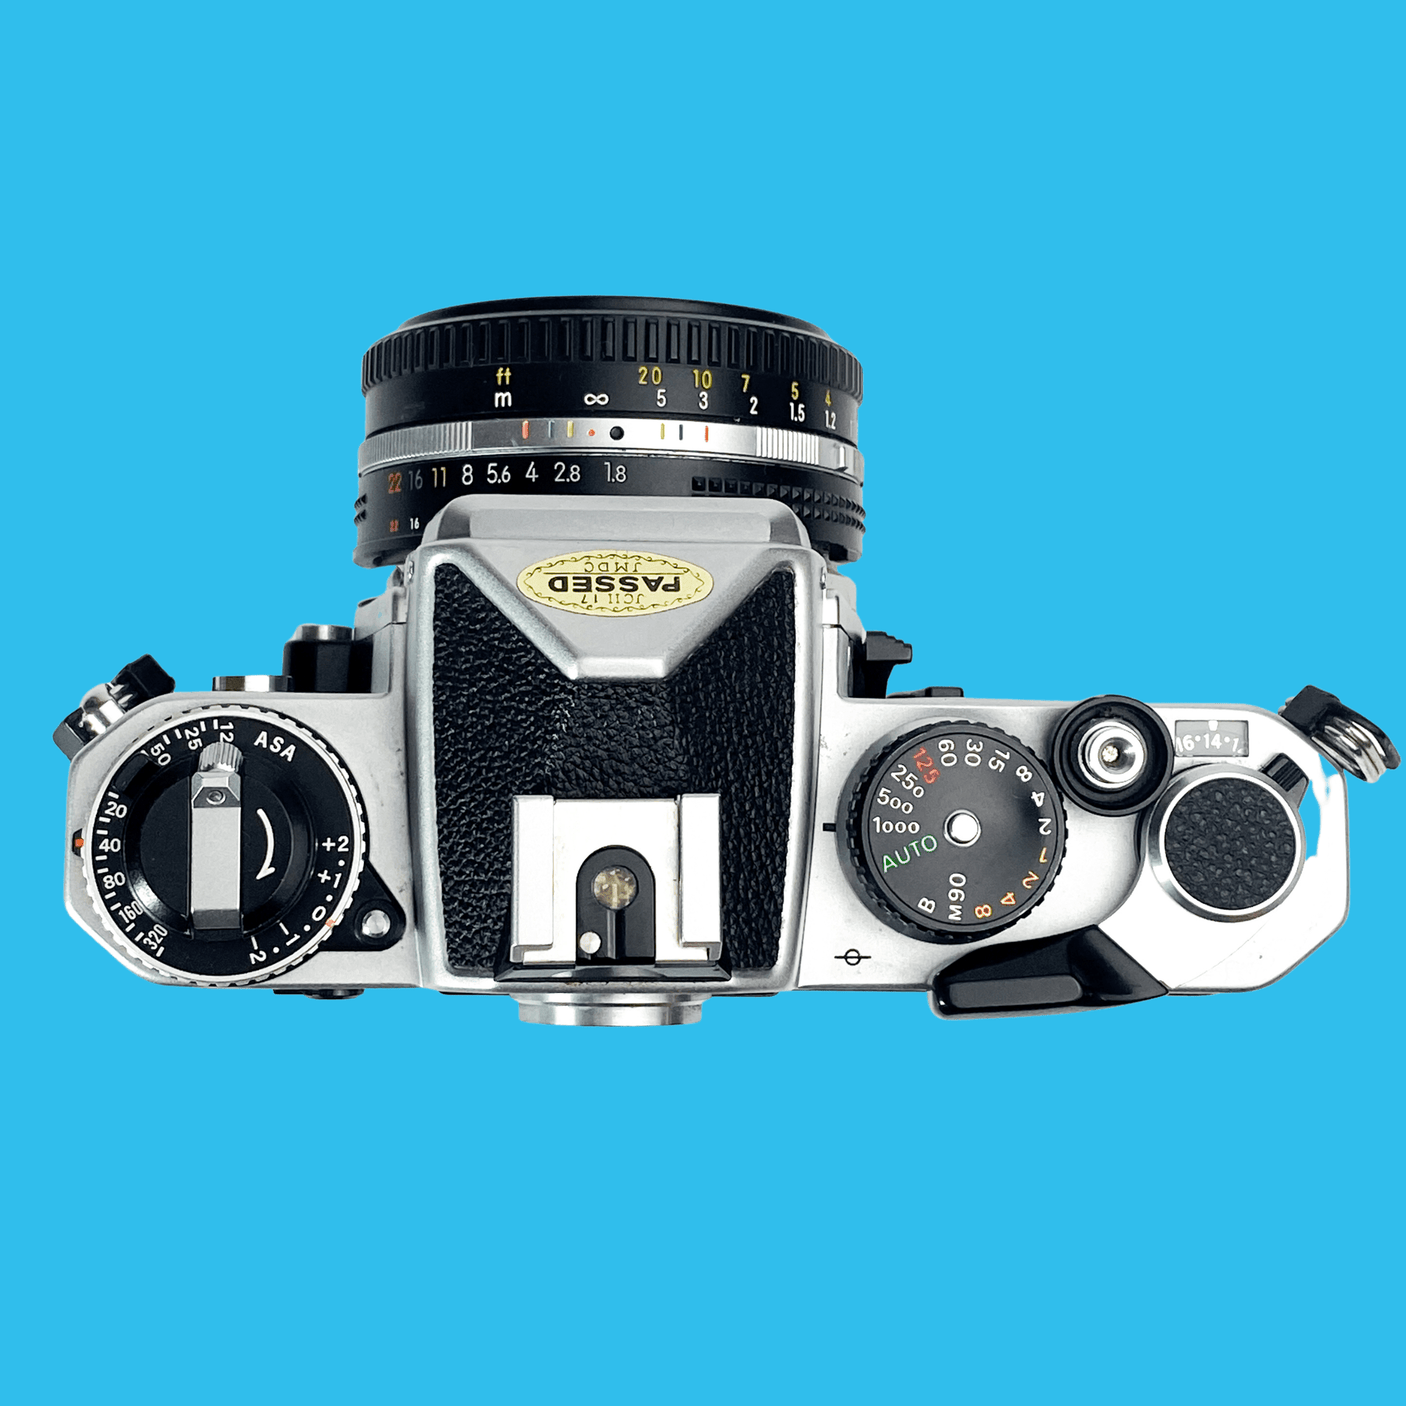 Nikon FE (Silver) 35mm SLR Film Camera With Nikkor 50mm F1.8 Lens